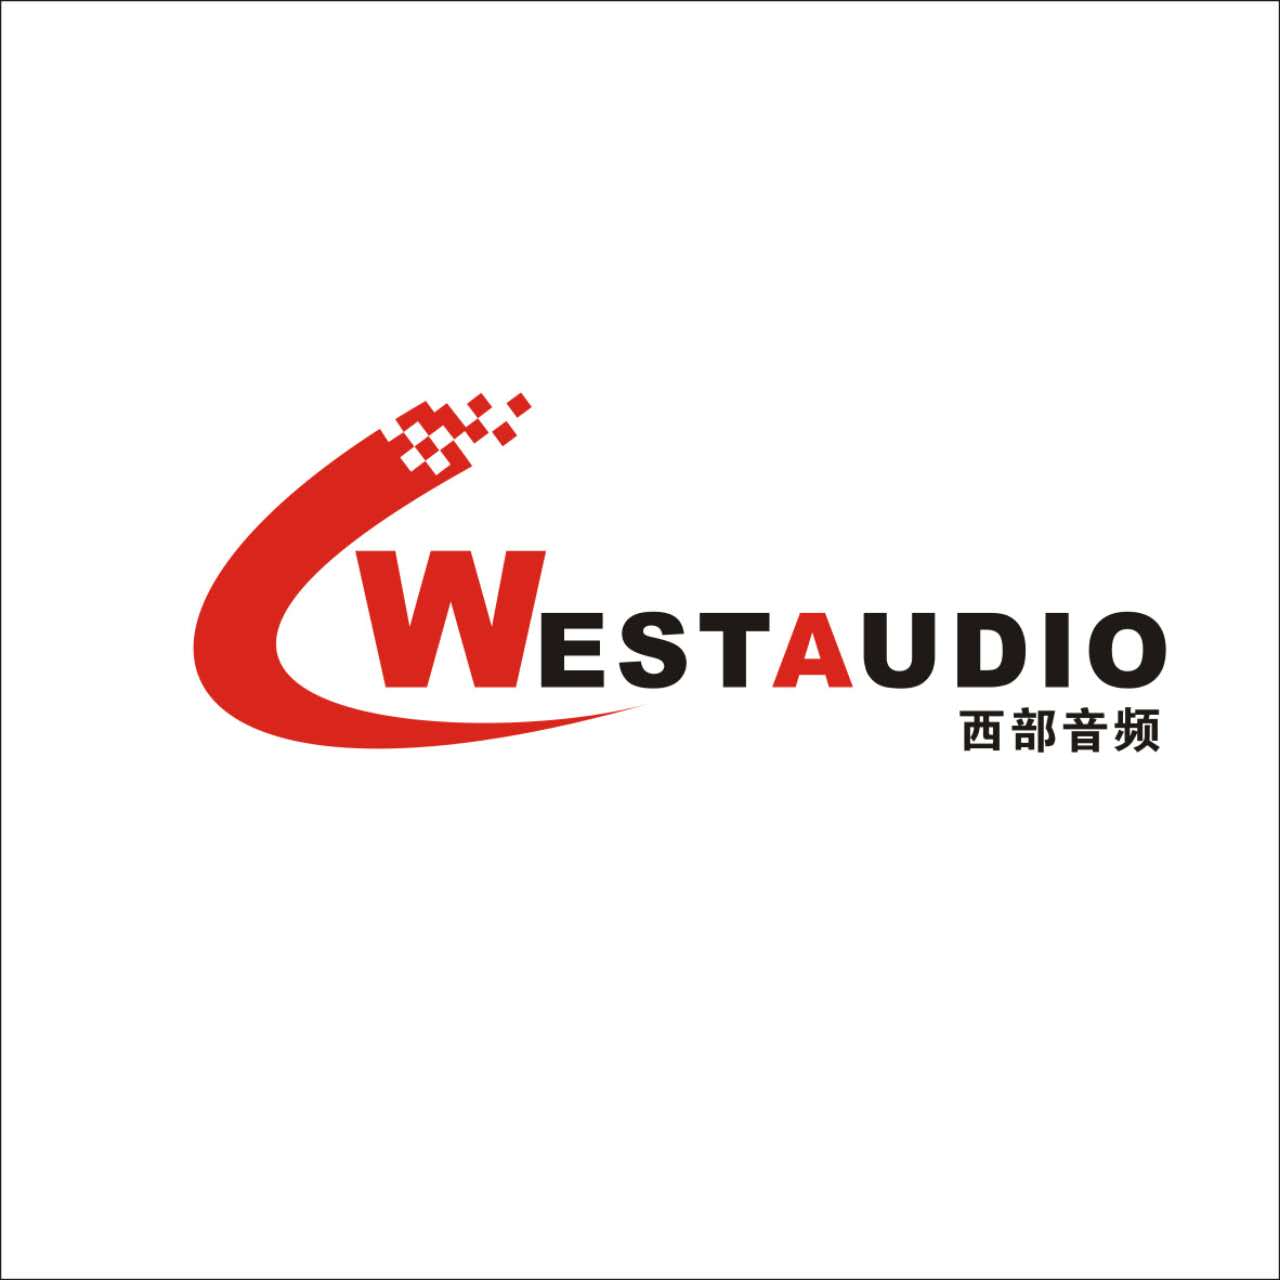 WestAudio西部音频